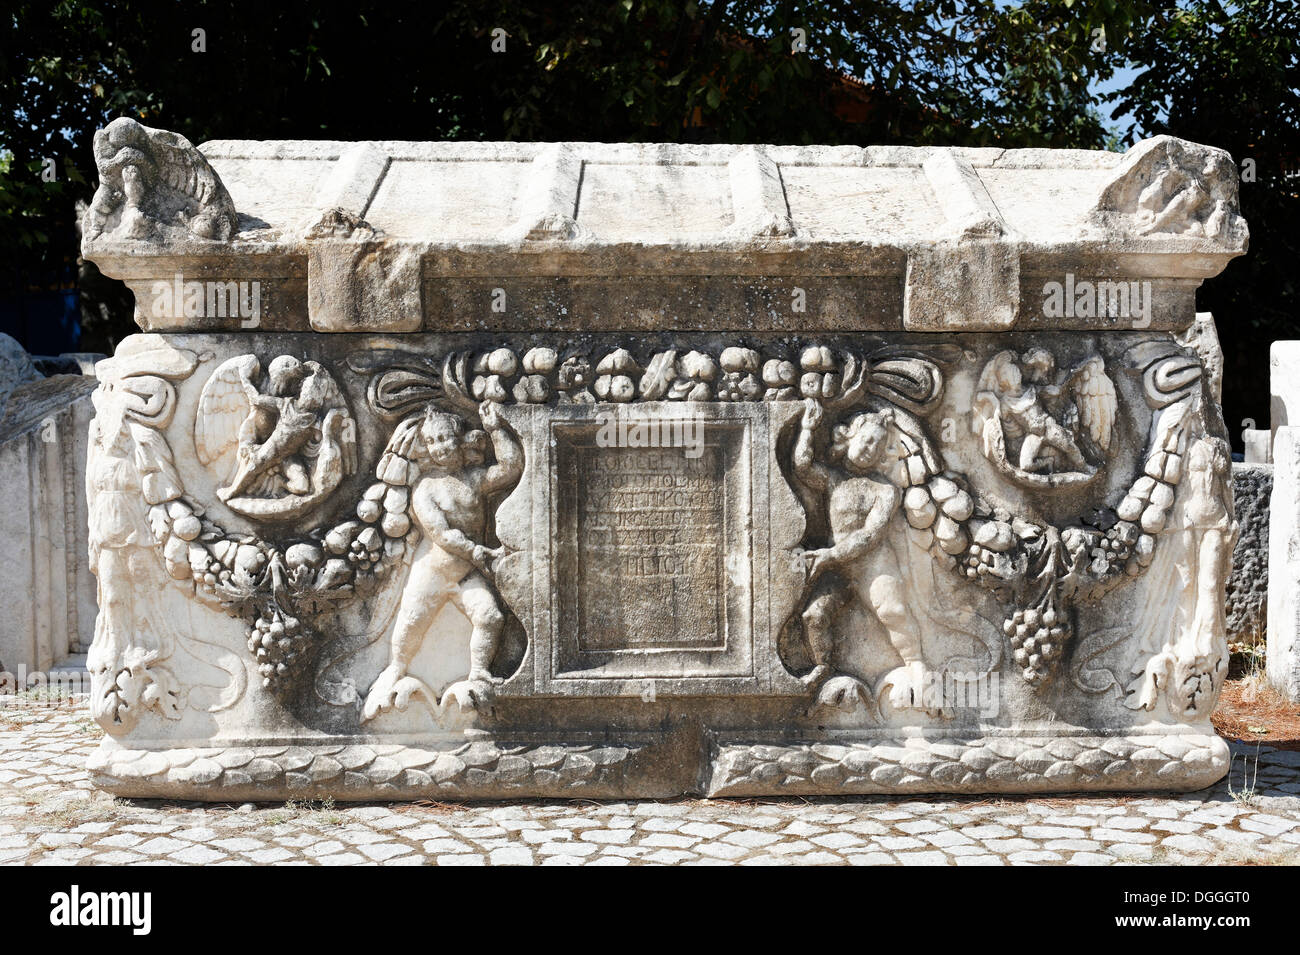 Ornate relief sur un sarcophage à l'ancien site archéologique d'Aphrodisias, Geyre, Karacasu, Aydin, l'ouest de la Turquie, Turquie Banque D'Images